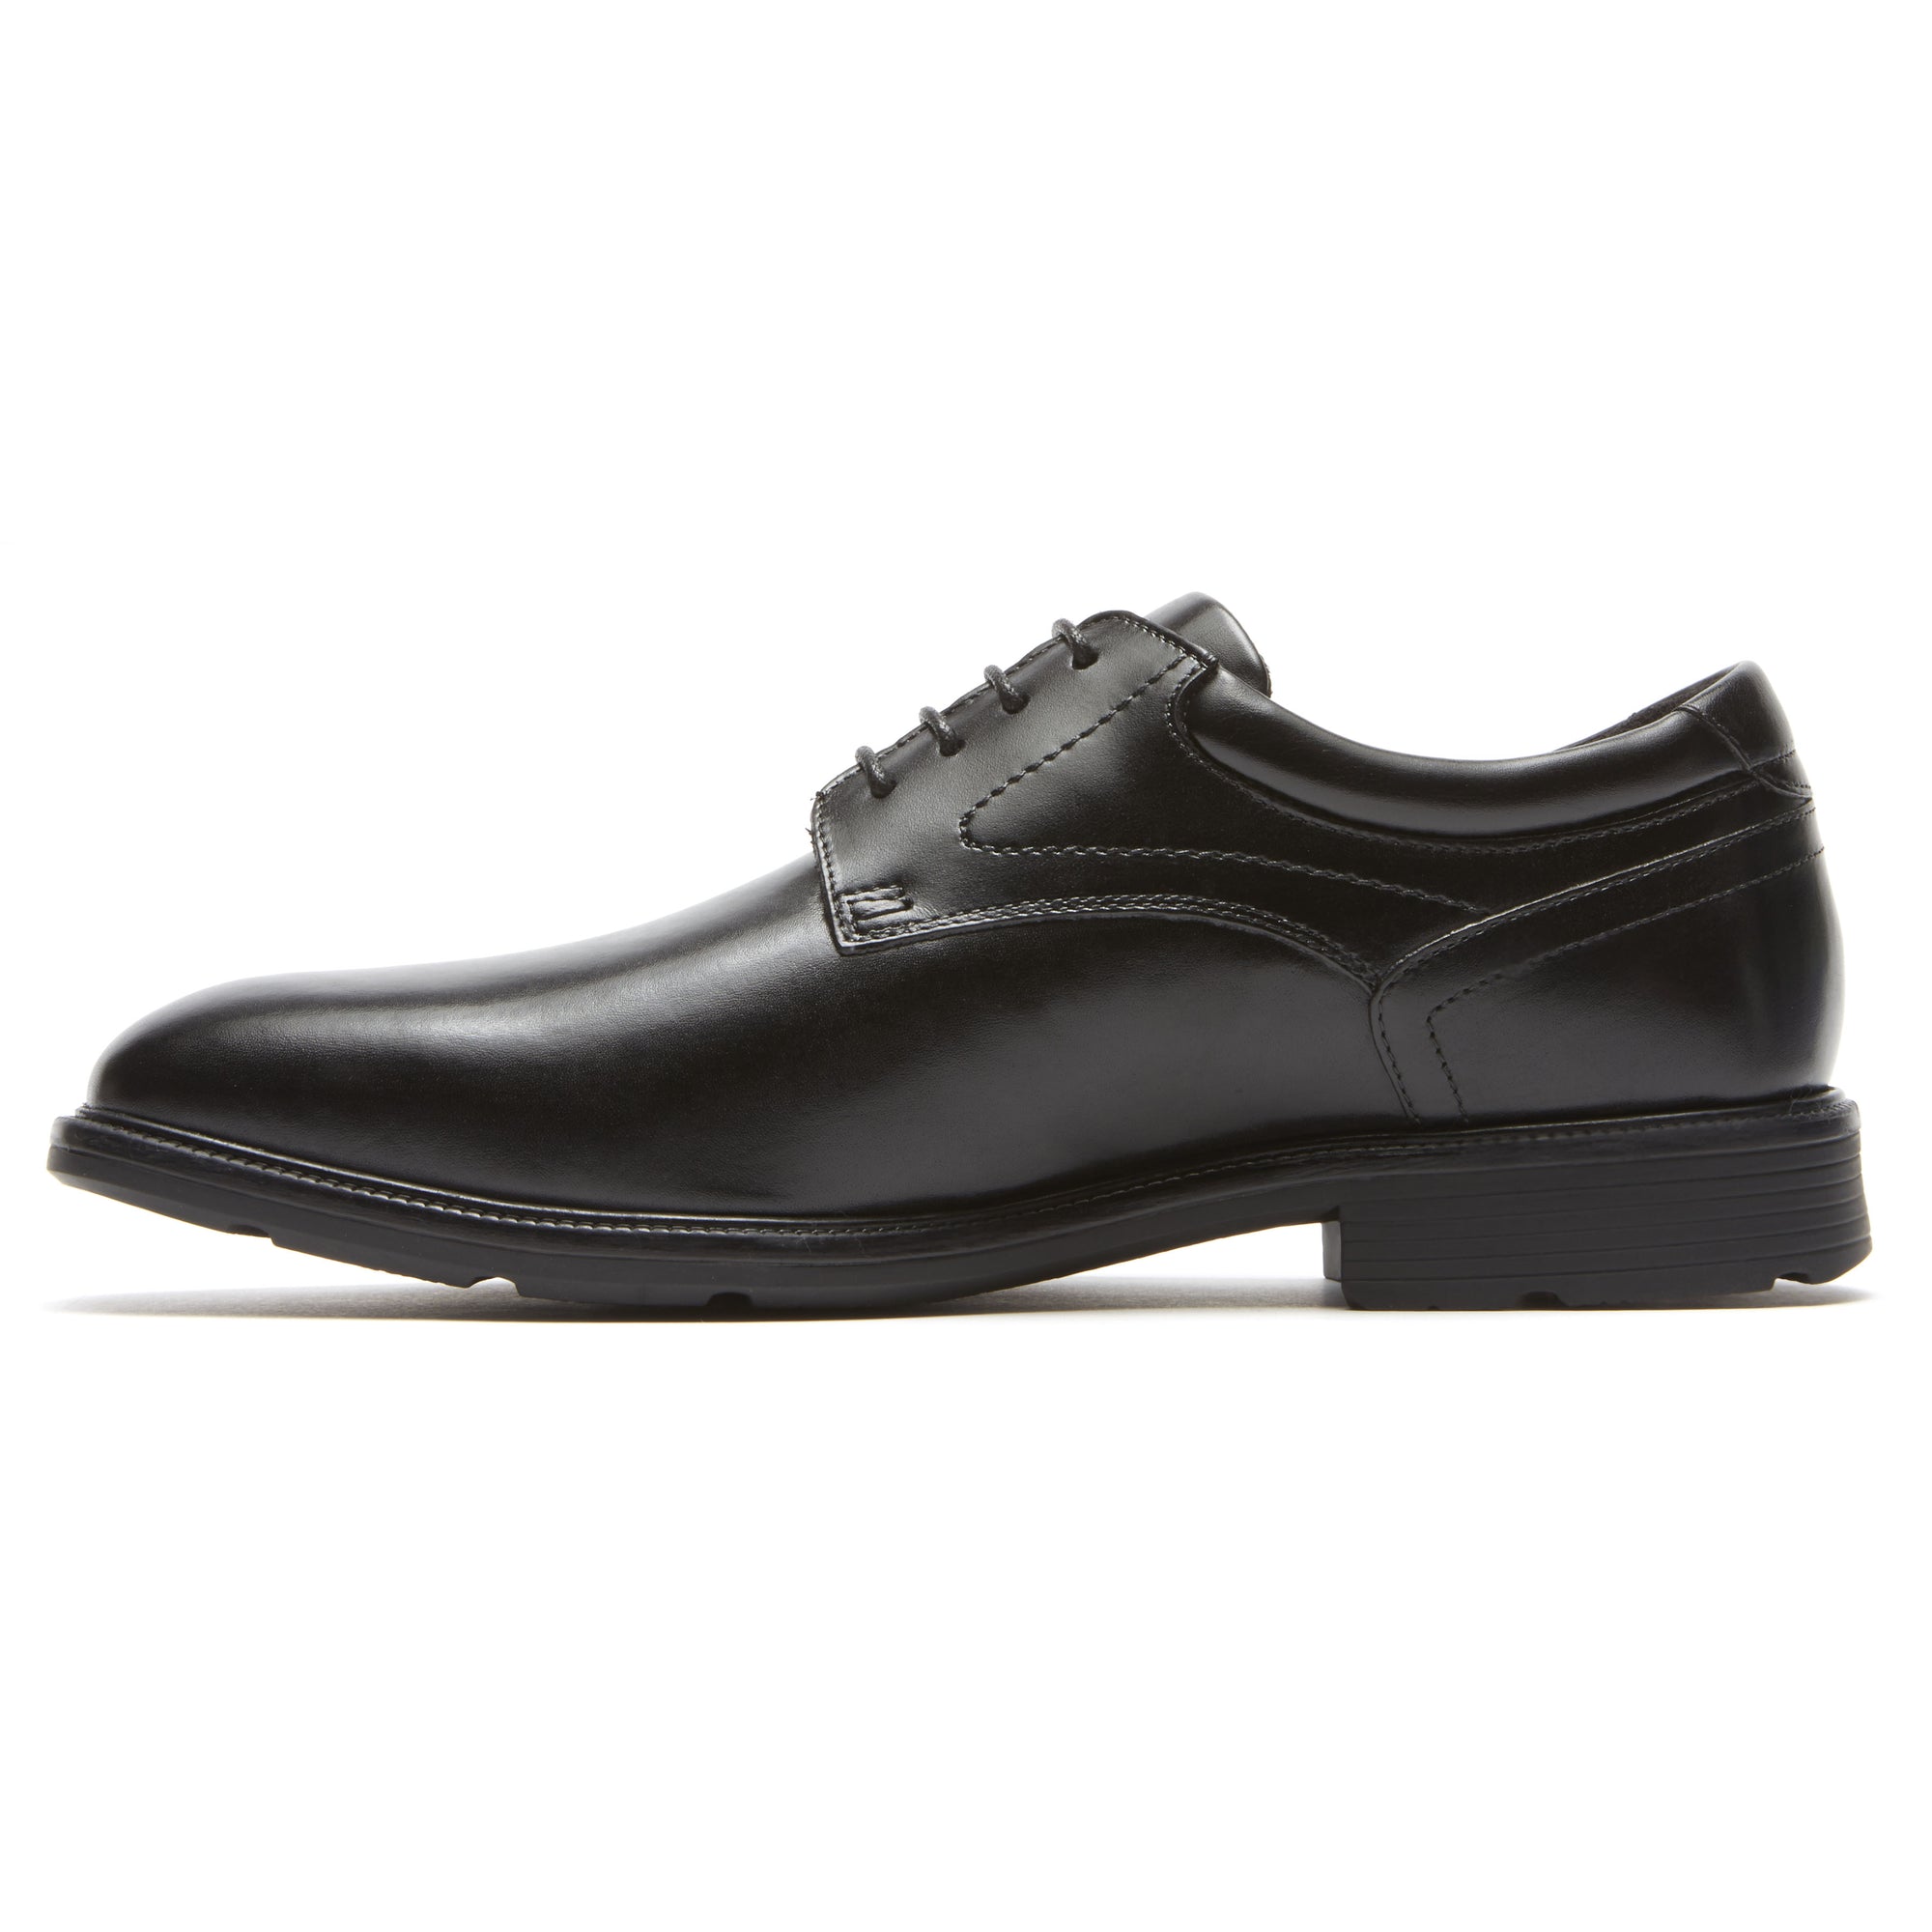 נעלי גברים אלגנטיות פליין טו שחור Rockport A12998W Pln Toe Black